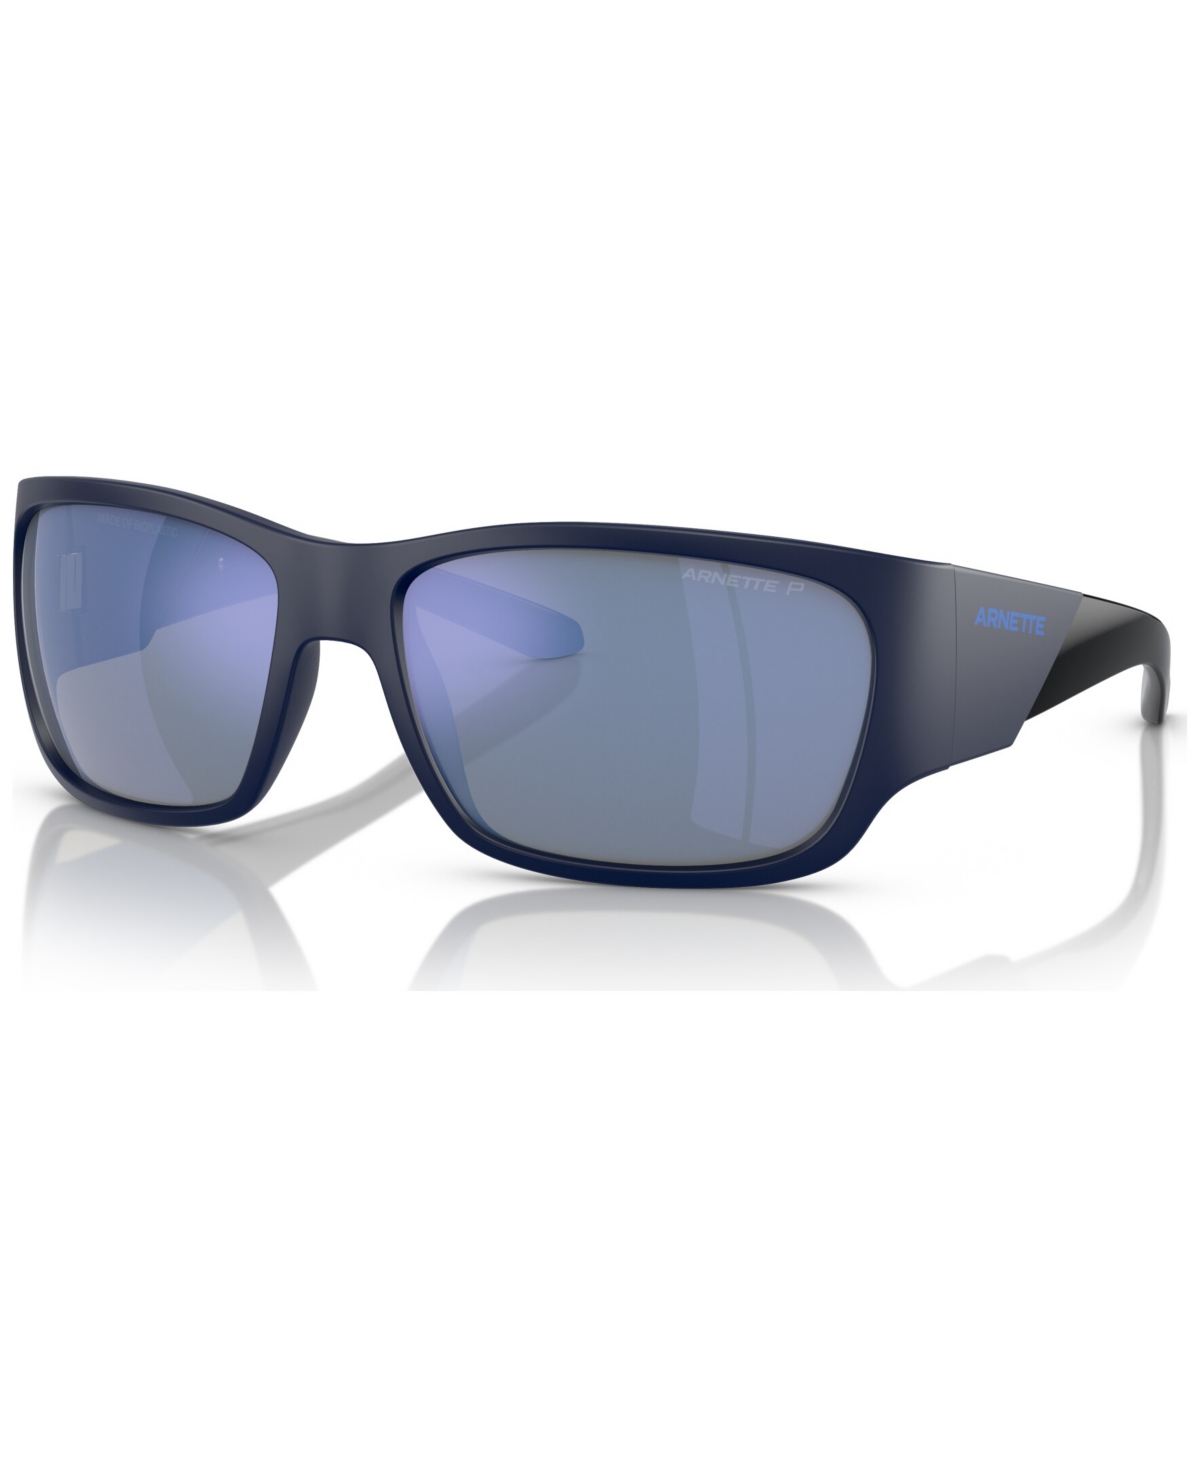 Men's Polarized Sunglasses, Lil' Snap - Matte Blue